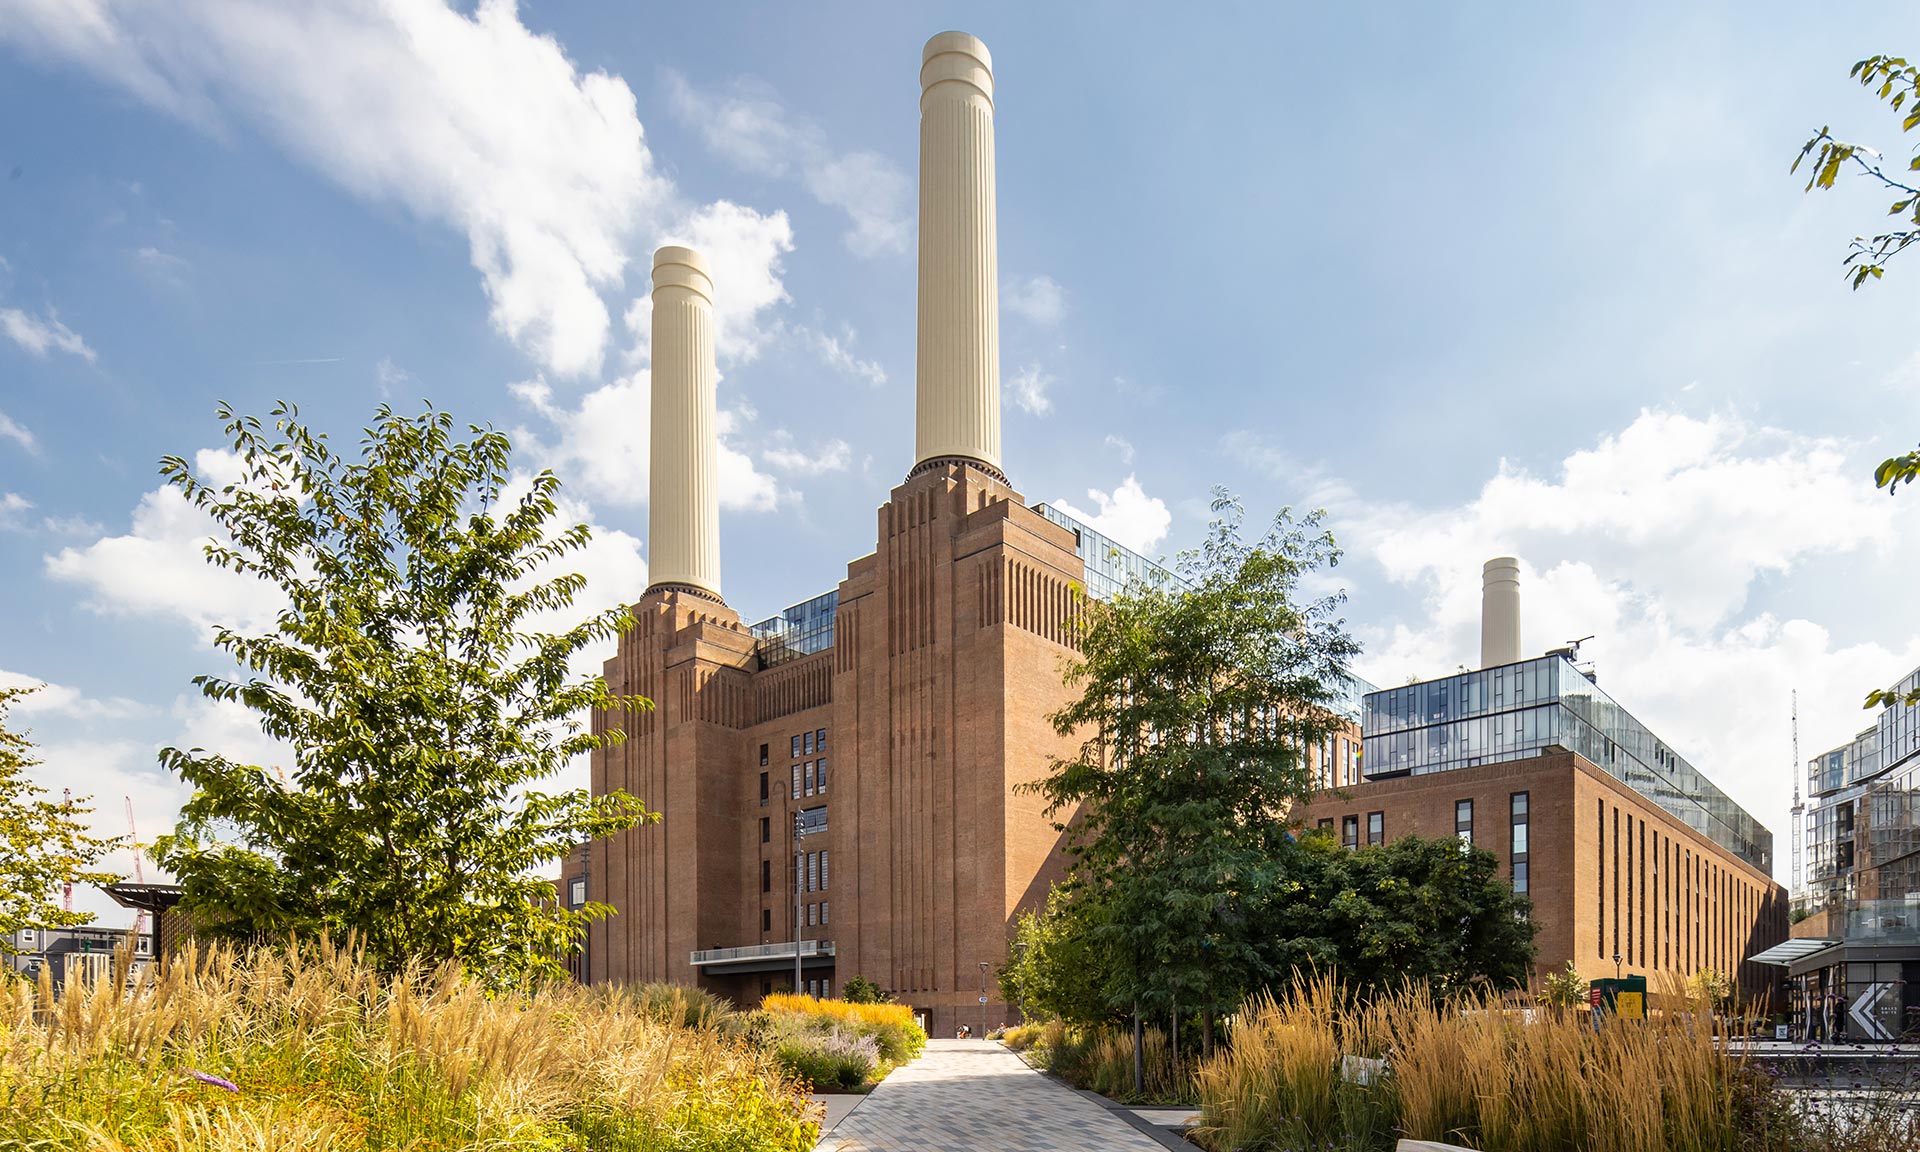 Ikonická londýnská elektrárna Battersea Power Station se po konverzi otevřela pro veřejnost